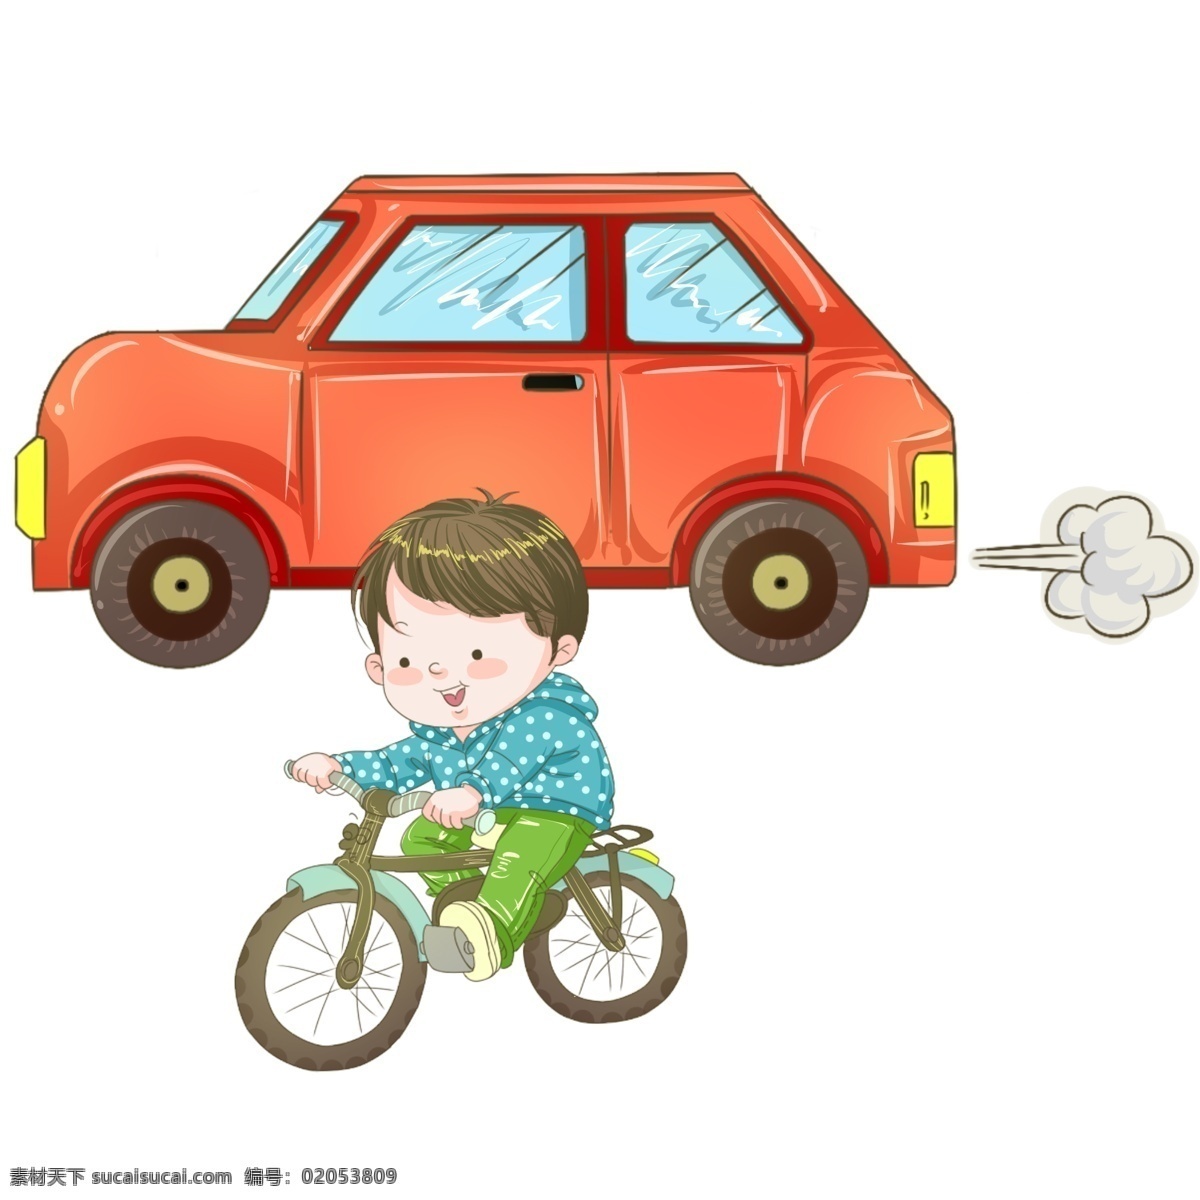 骑 自行车 小 男孩 文明出行 交通安全 交通规则 红色的汽车 白色的尾气 污染